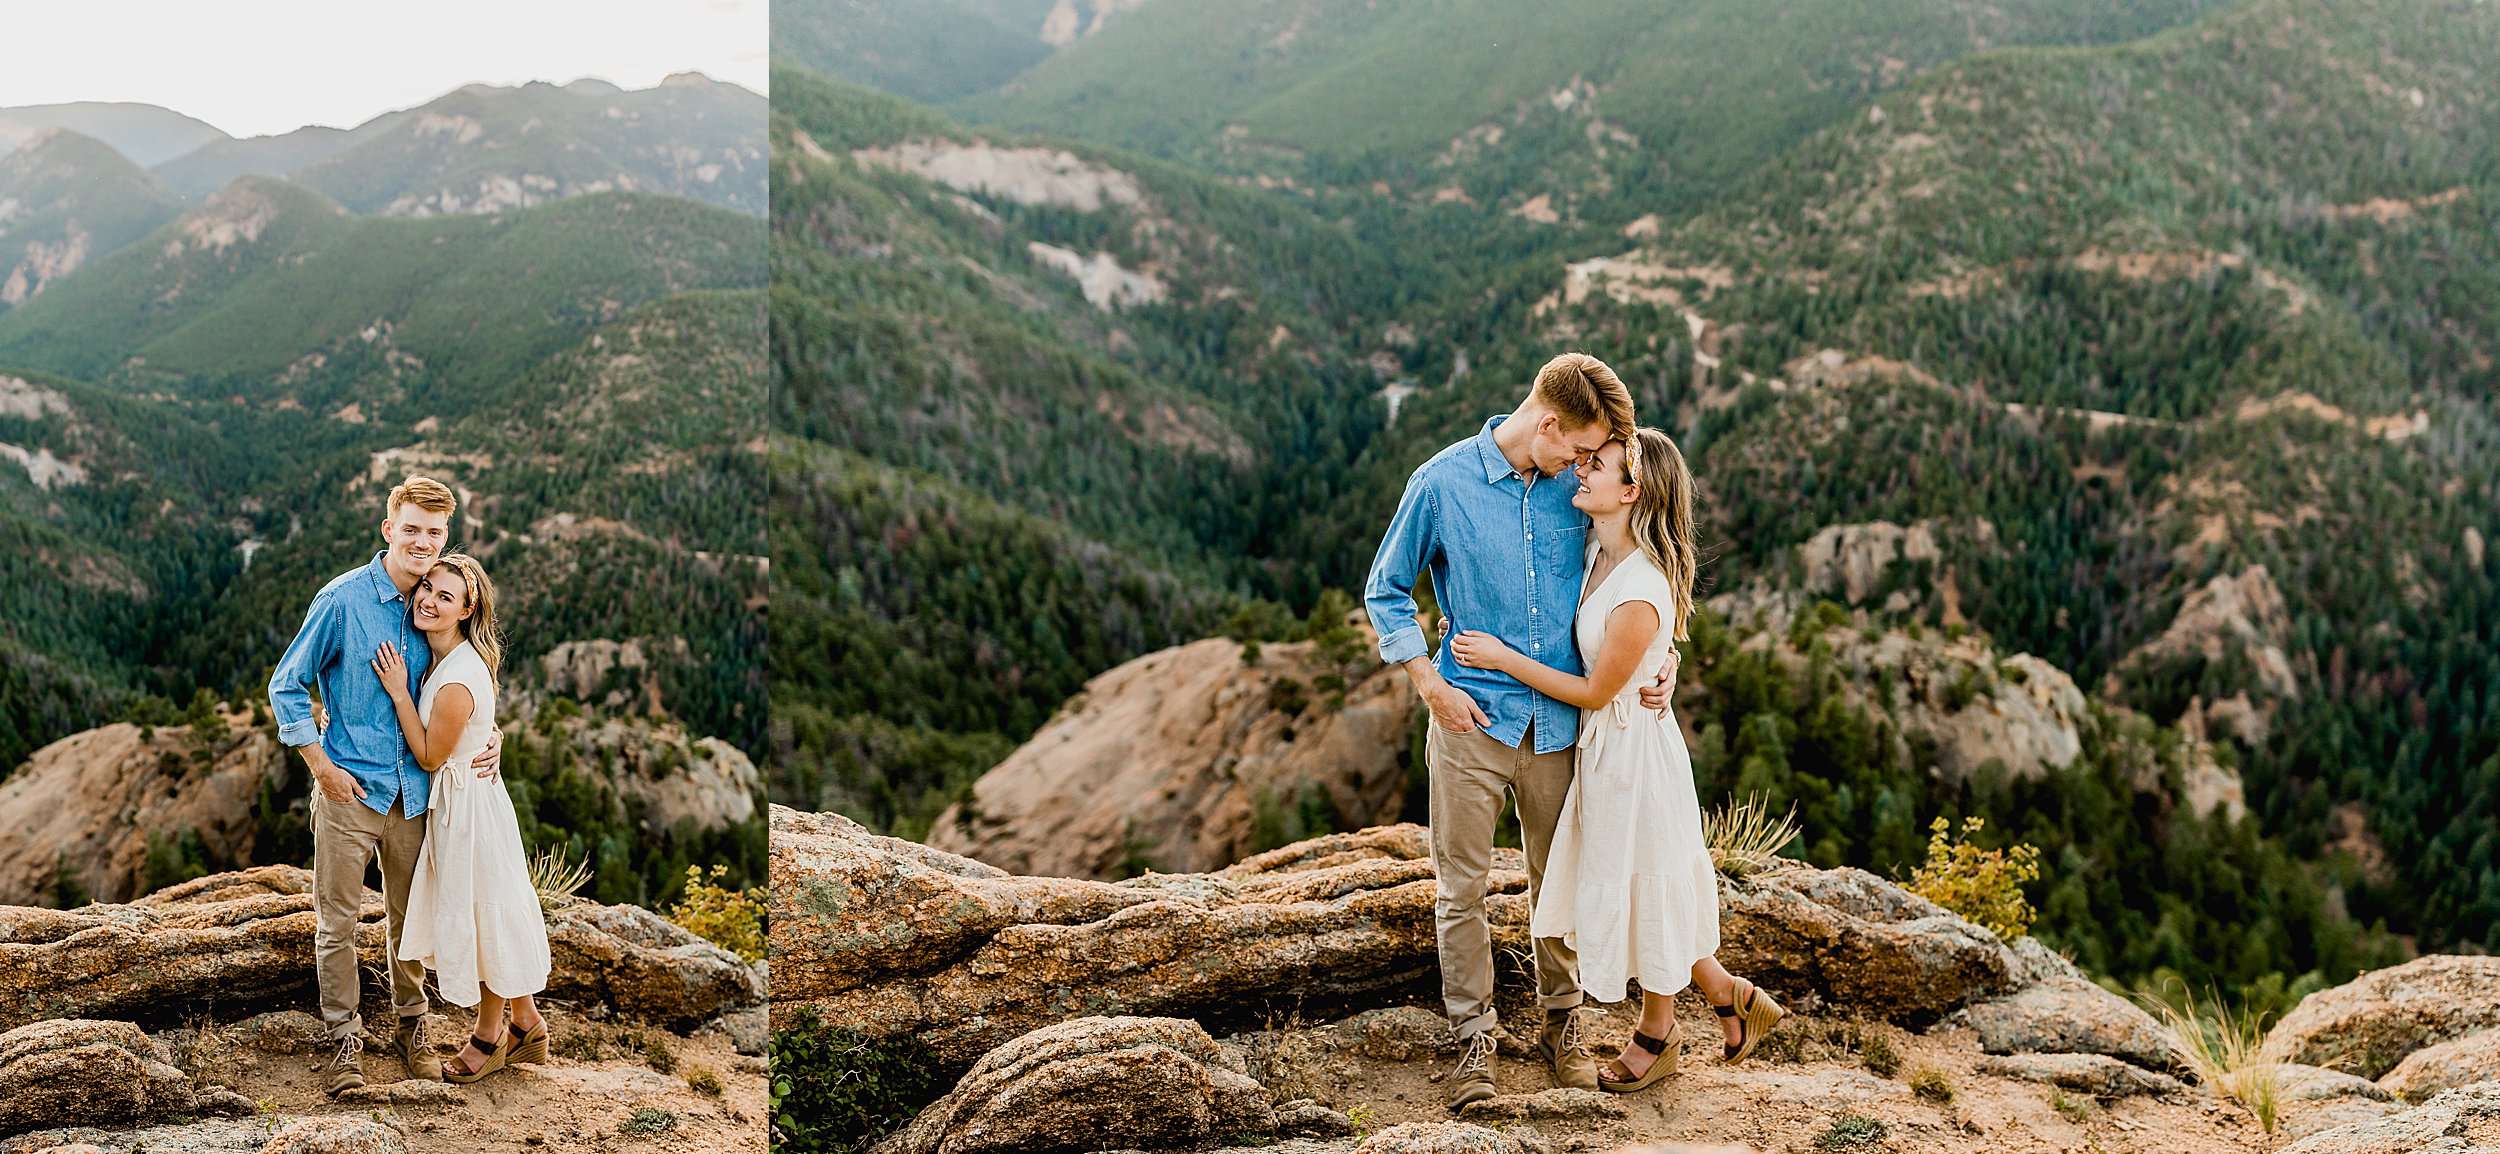 colorado mountain engagement photos, lauren casino photographs a couple in the colorado mountains